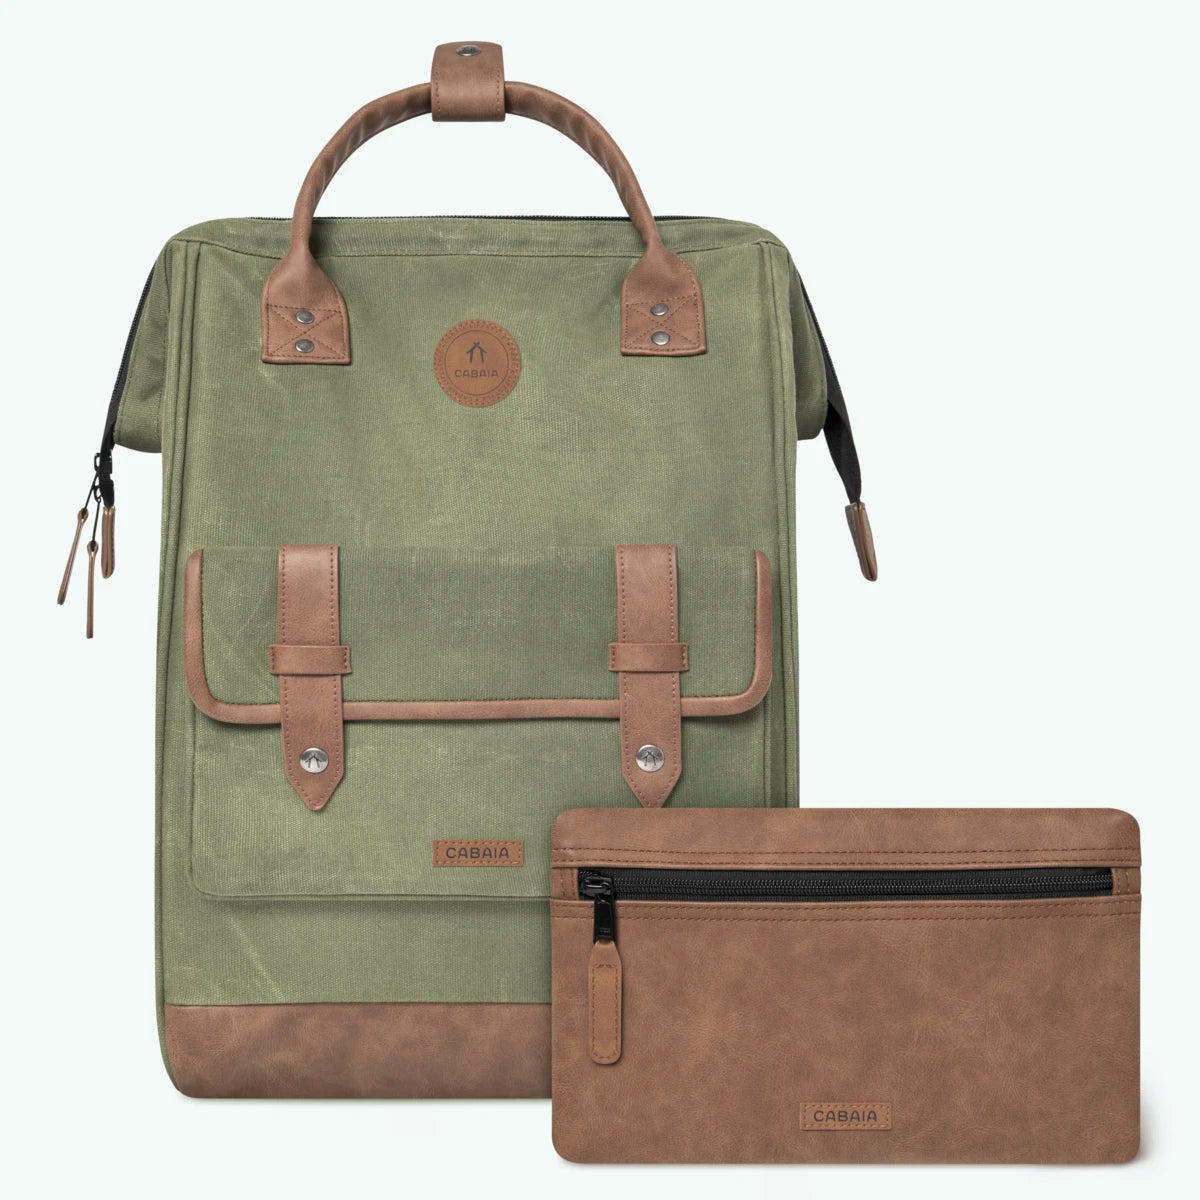 Adventurer green - Maxi - Backpack